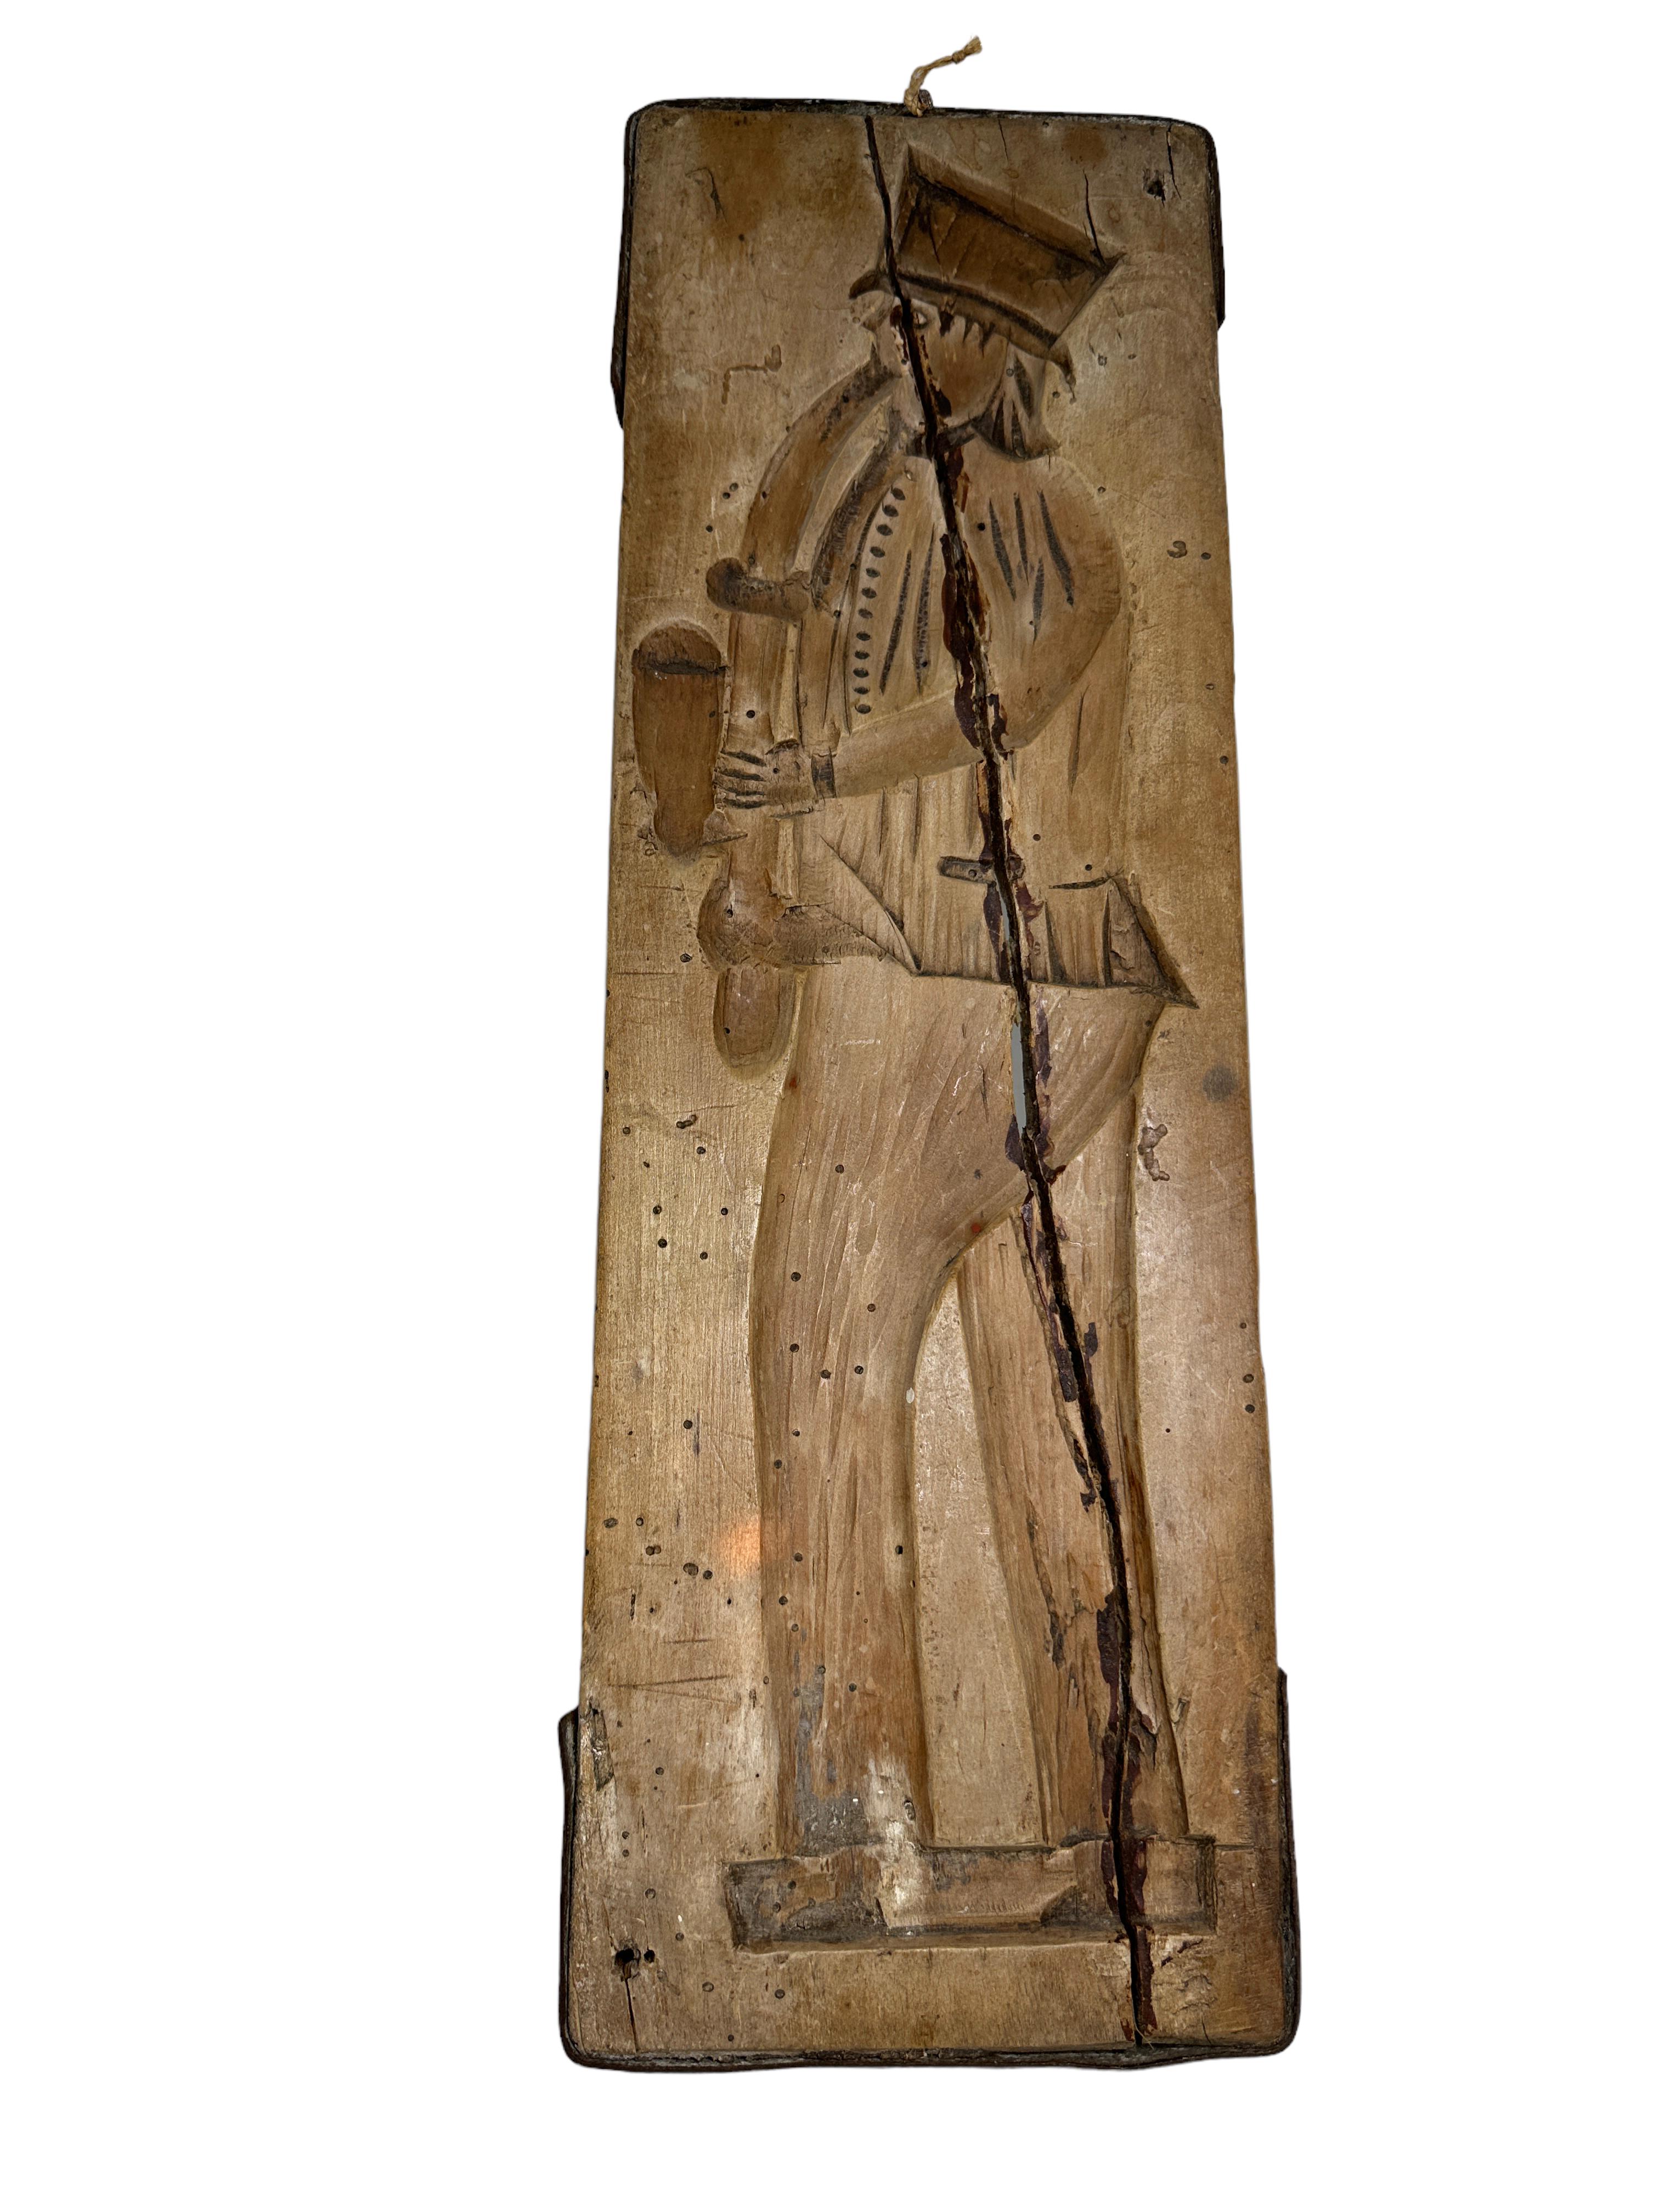 Eine klassische doppelseitige Lebkuchen- oder Spekulatiusform aus Holz aus dem 118. Jahrhundert (Adelige und Adeliger). Hergestellt aus handgeschnitztem Holz. Gefunden bei einem Nachlassverkauf in Wien, Österreich.
Wurde vor langer Zeit repariert,